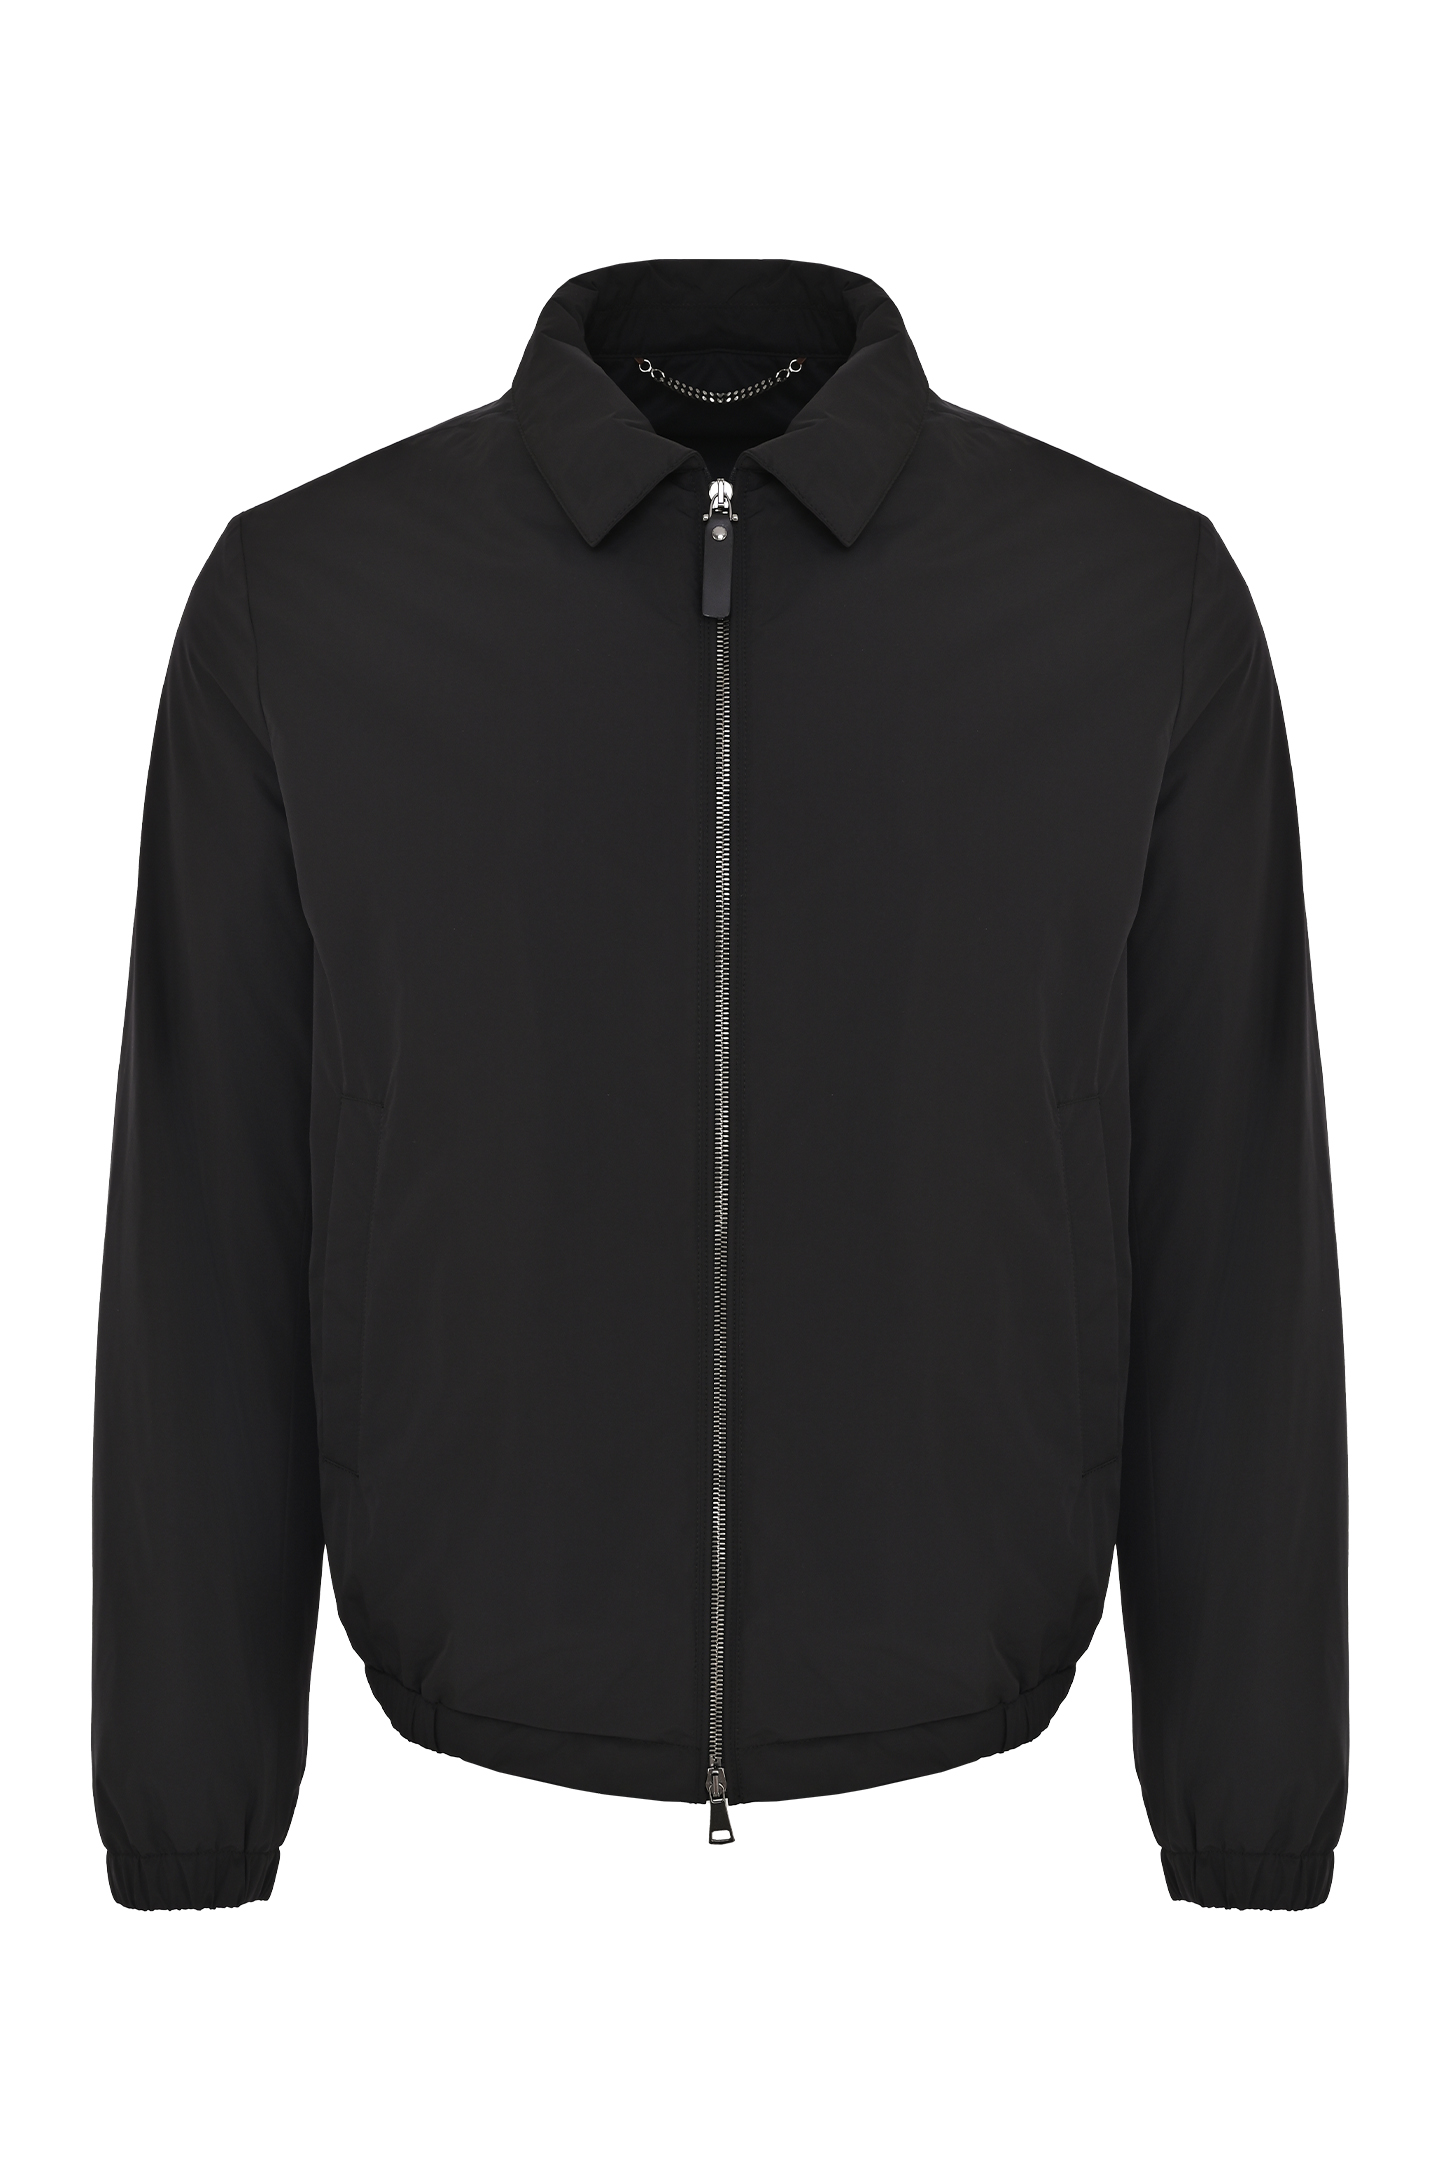 Куртка CANALI SG02321 O40859, цвет: Черный, Мужской